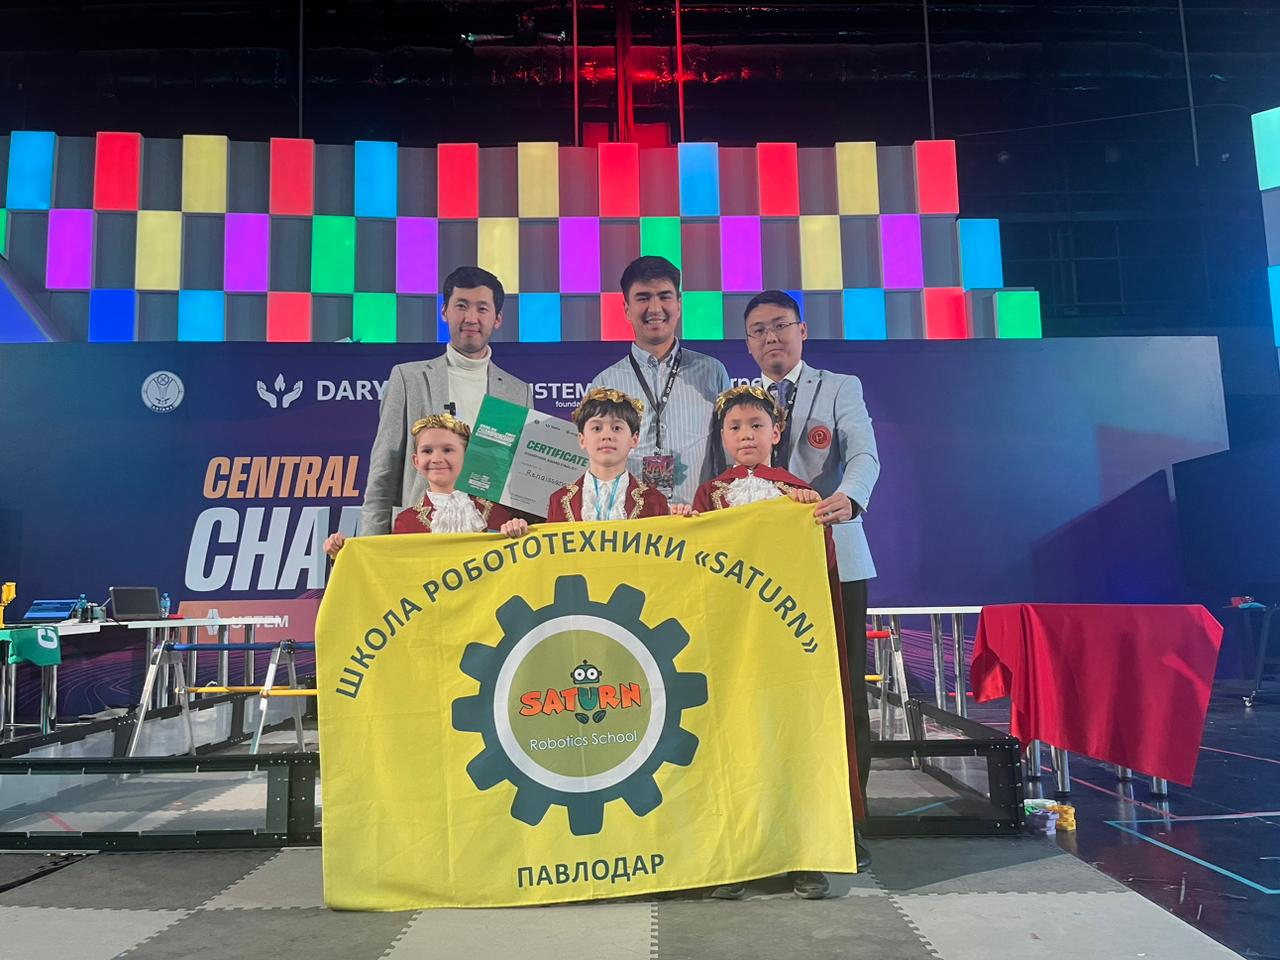 Павлодарлық оқушылар робототехника бойынша Орталық Азия ашық чемпионатының финалистері атанды 